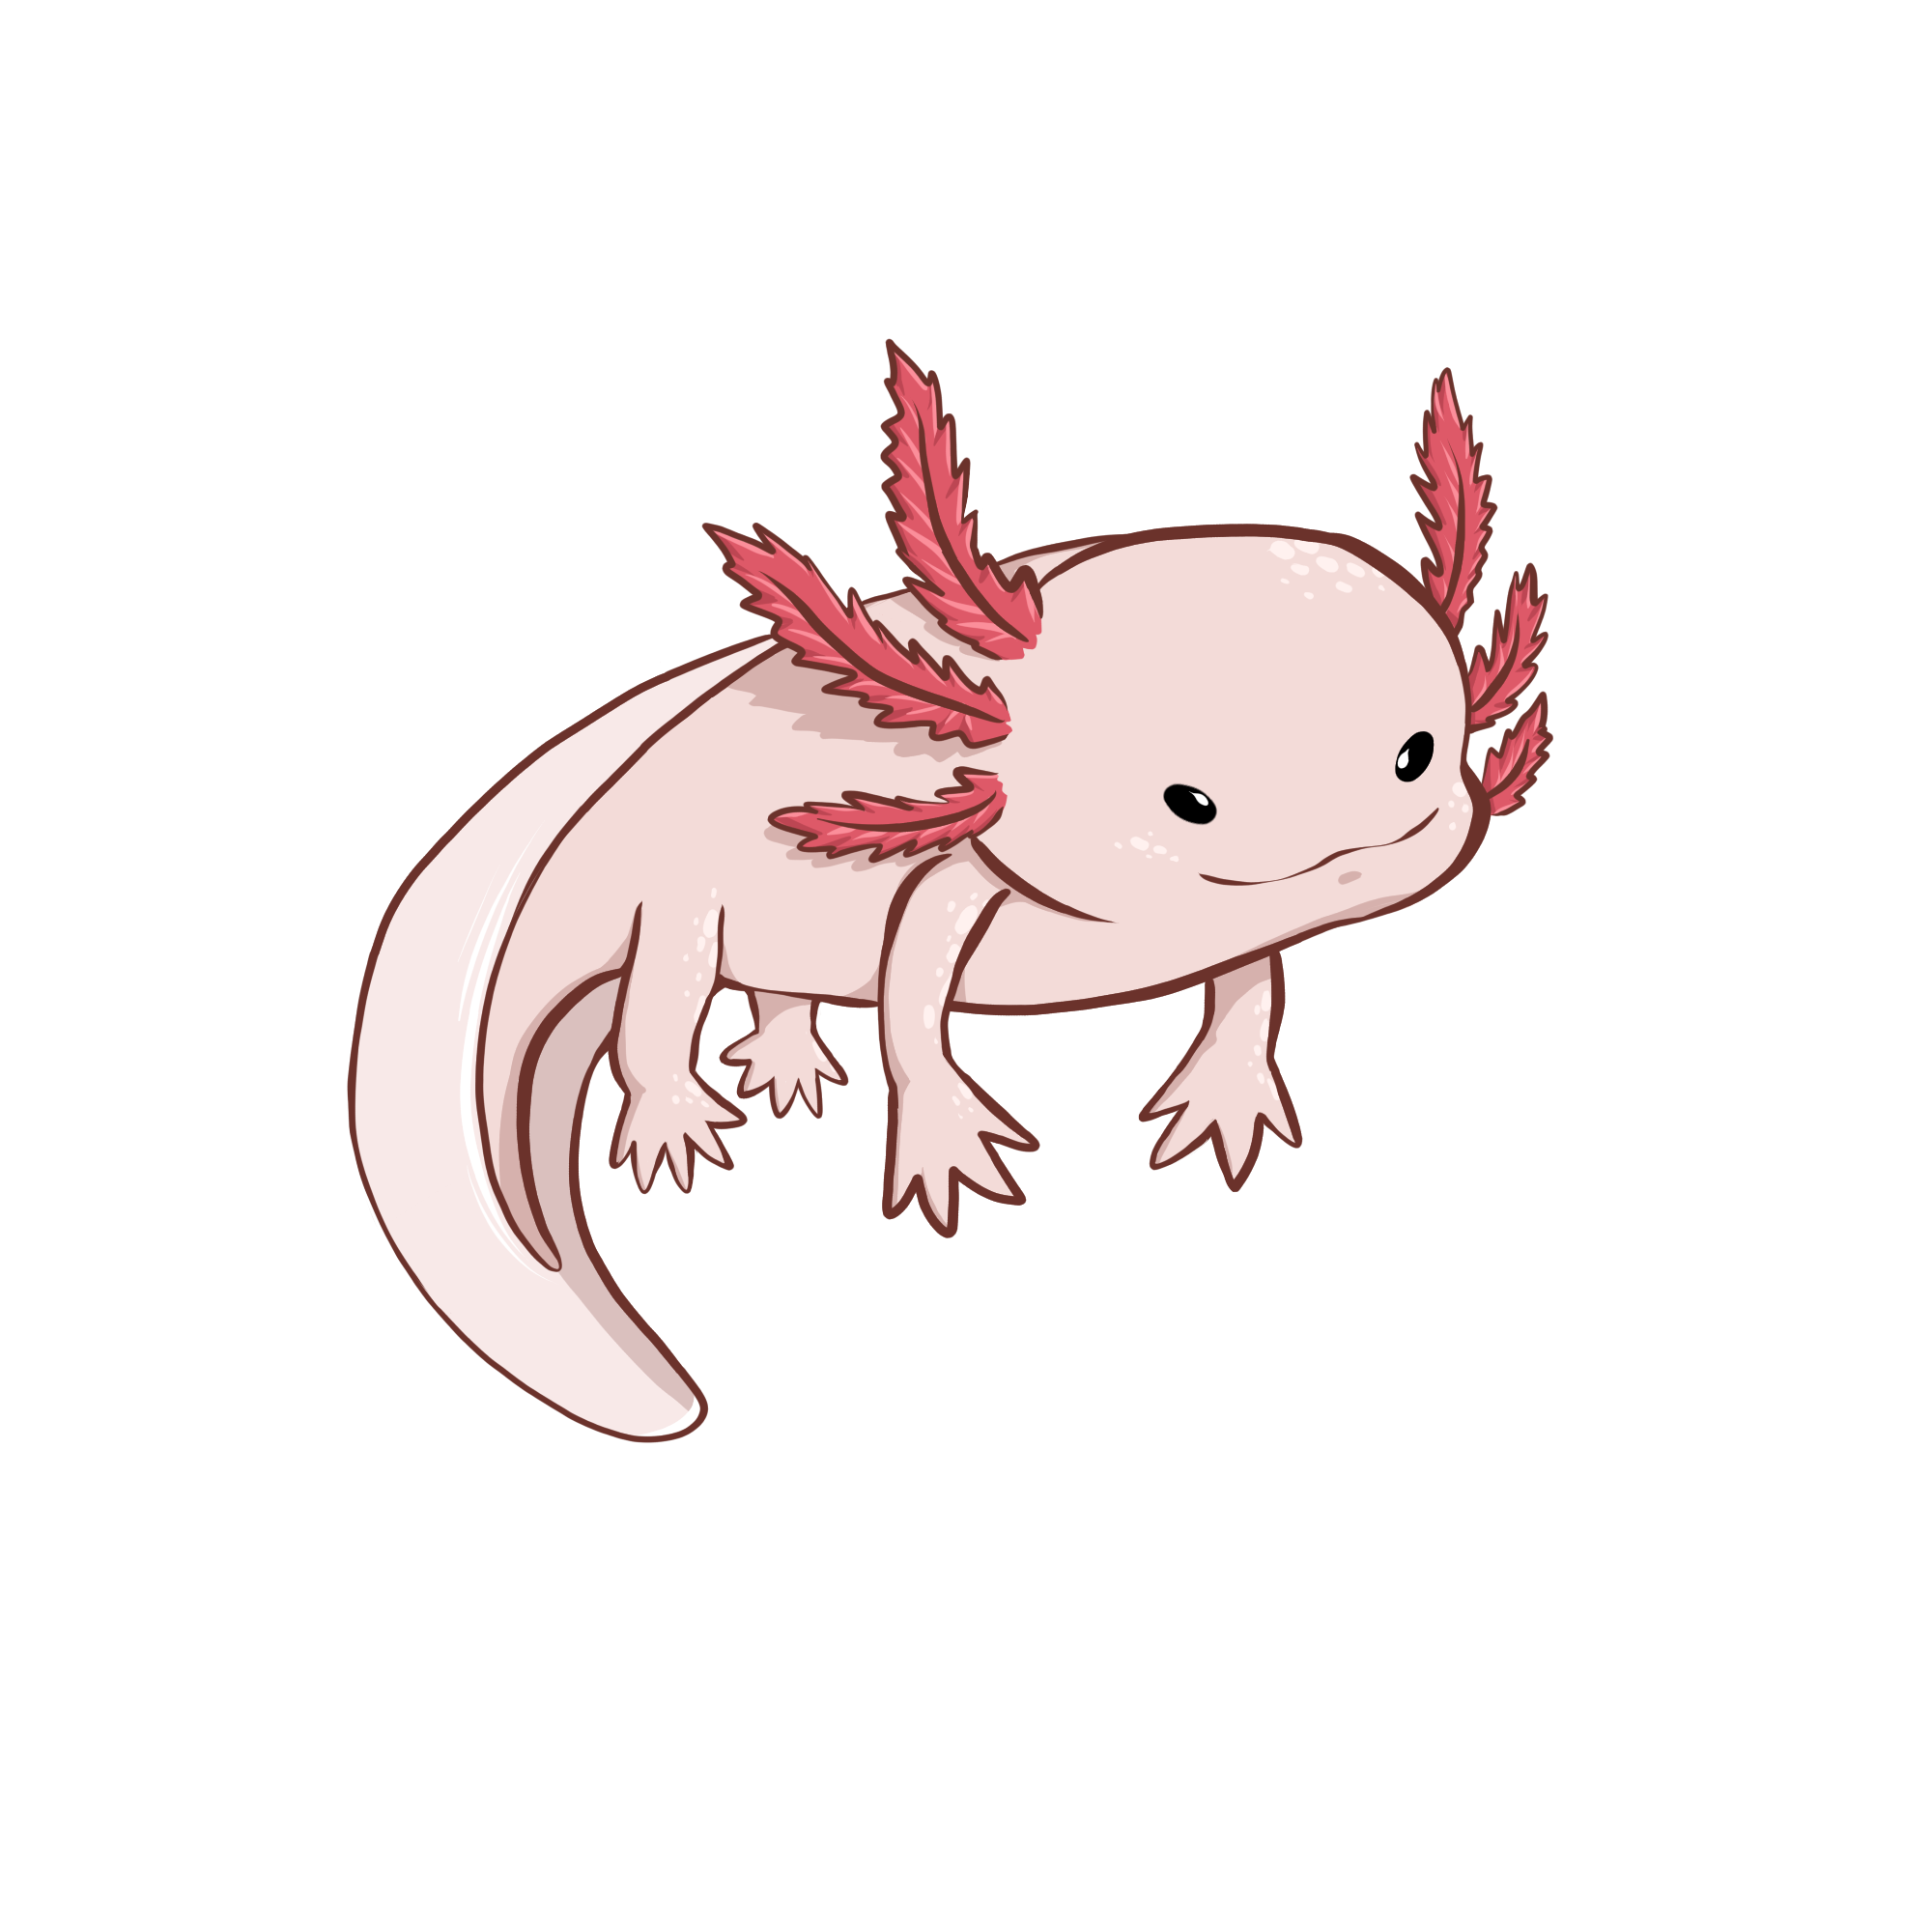 Blazor Axolotl Engine's mascot